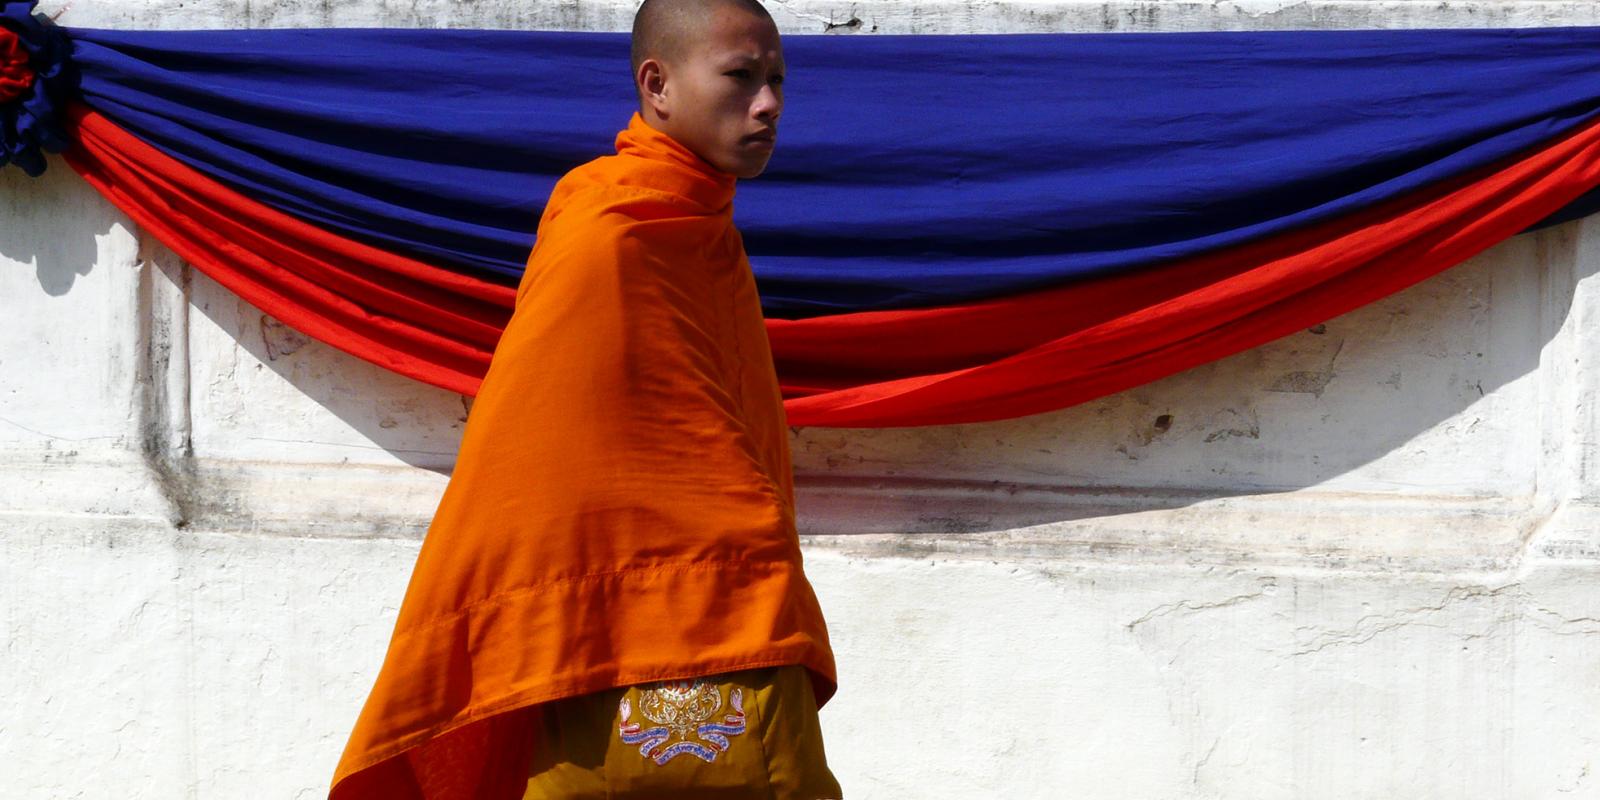 Reisverhaal en tips over Luang Prabang: van tempels tot nachtmarkten | Online reismagazine My World is Yours